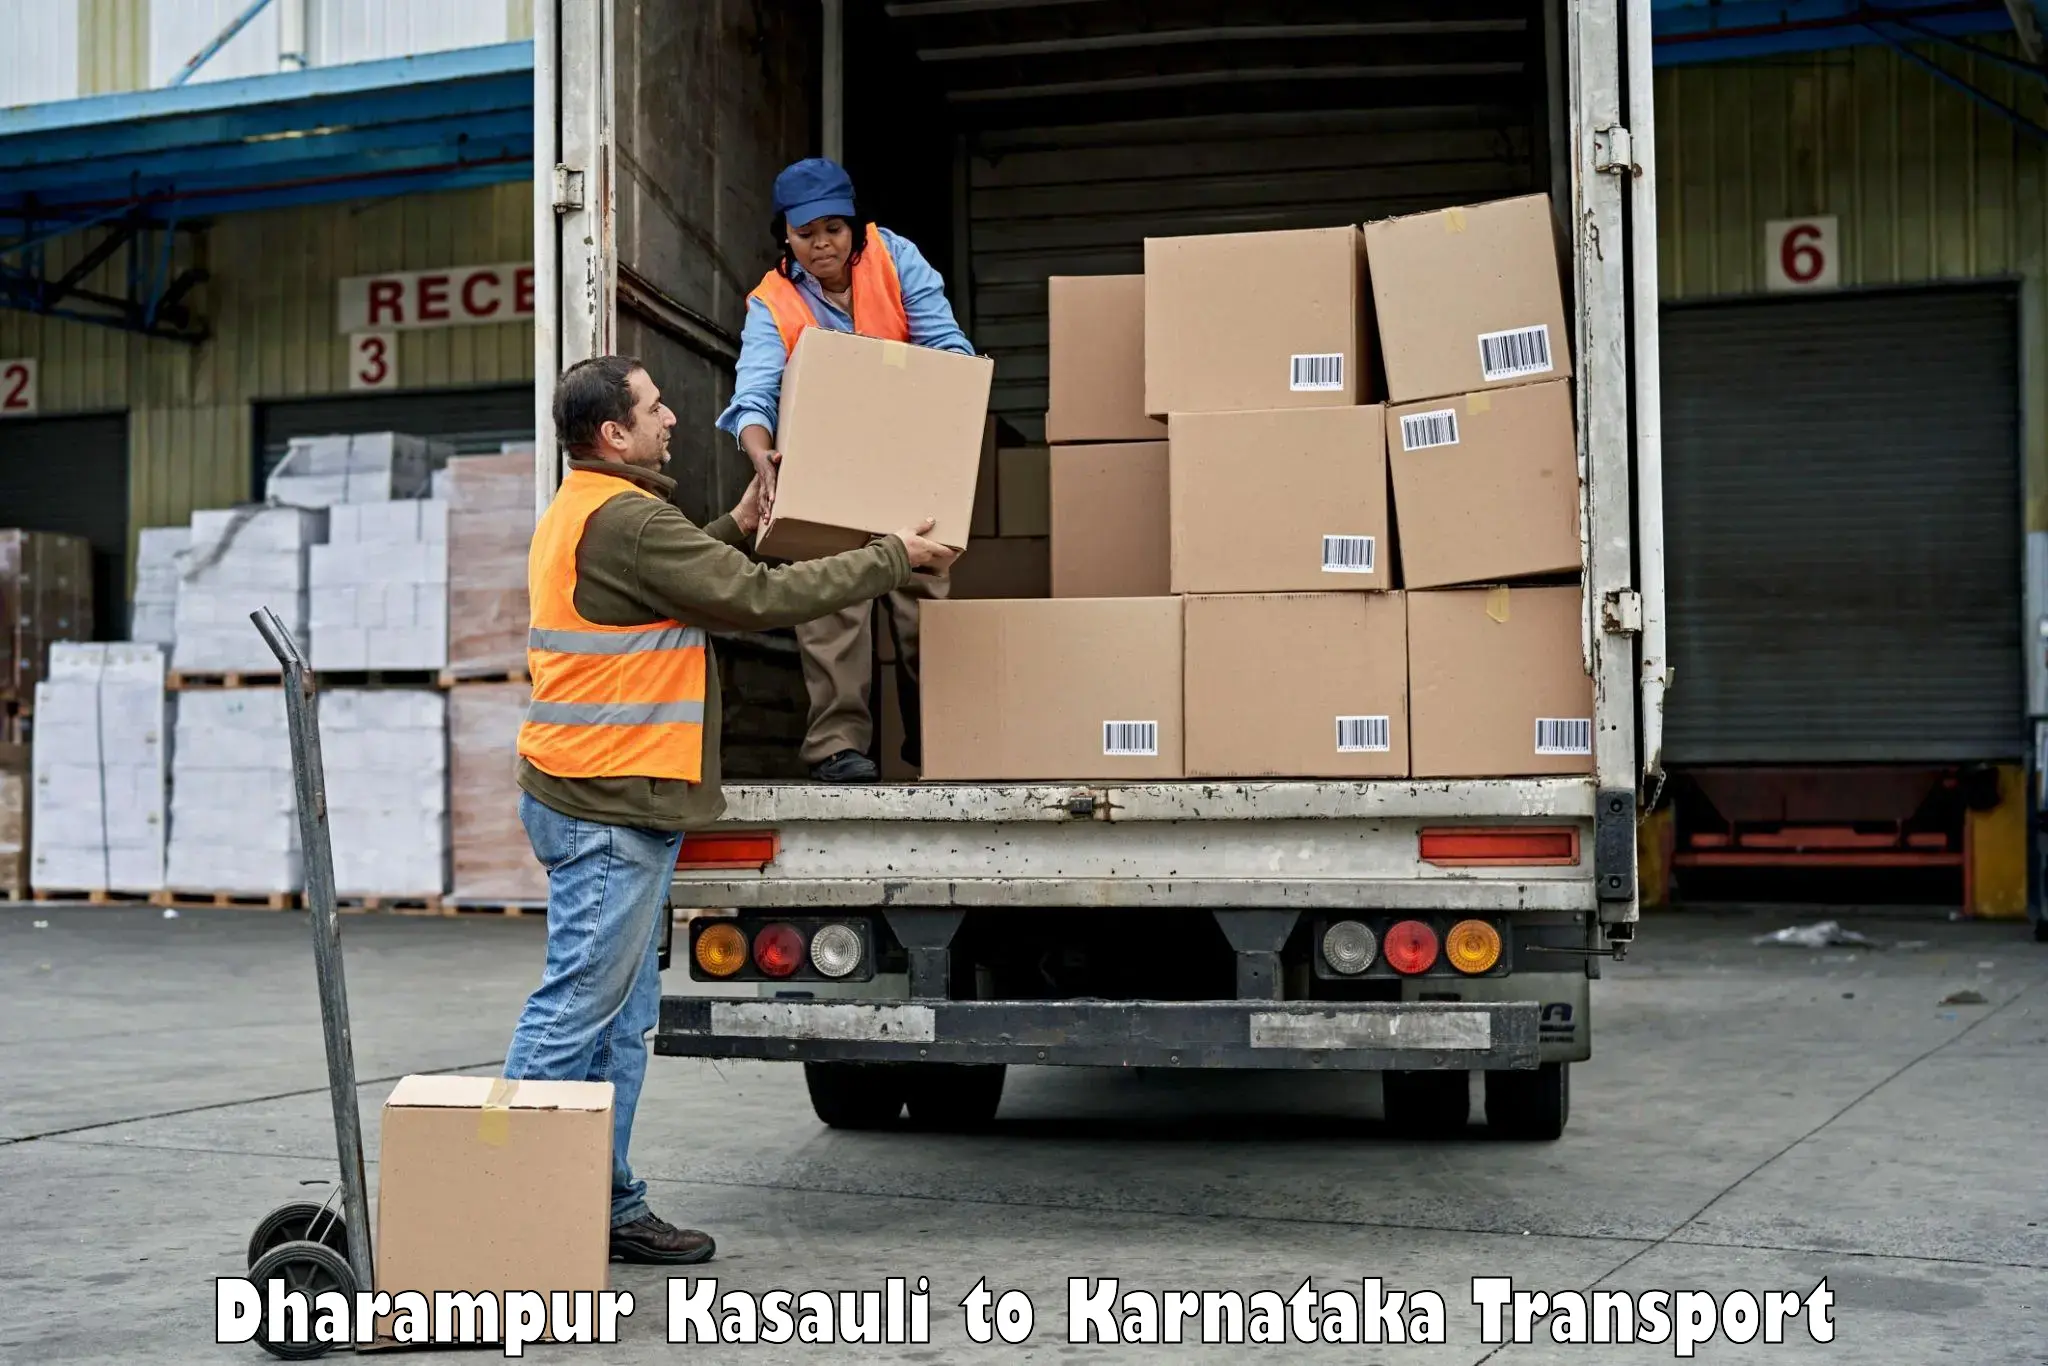 Pick up transport service Dharampur Kasauli to Mangalore